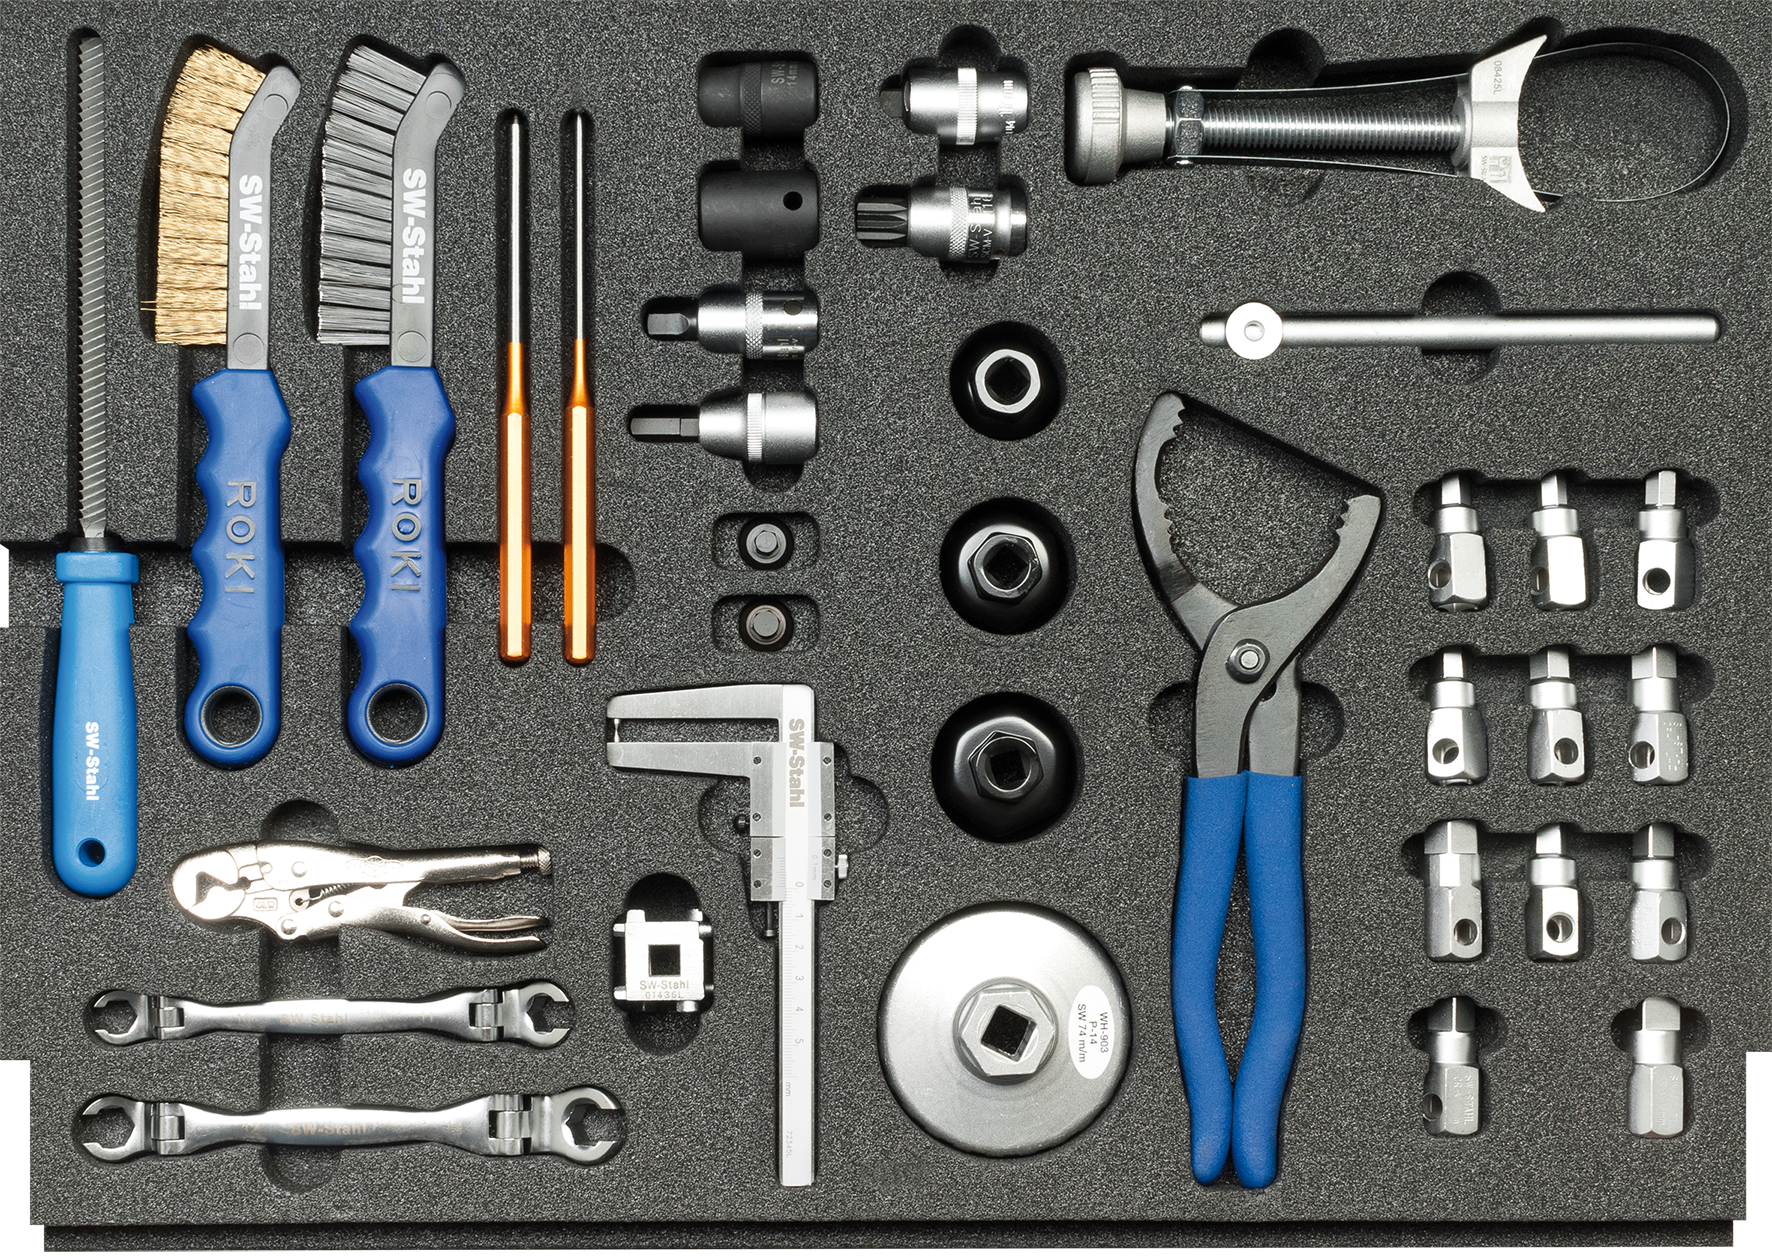 Bremssattel Spezialeinsatz Werkzeug von SW-STAHL - Professionelle Qualität  für SAF und Knorr Sättel, Spezialwerkzeuge, Ersatz- und Verschleißteile, Werkzeuge